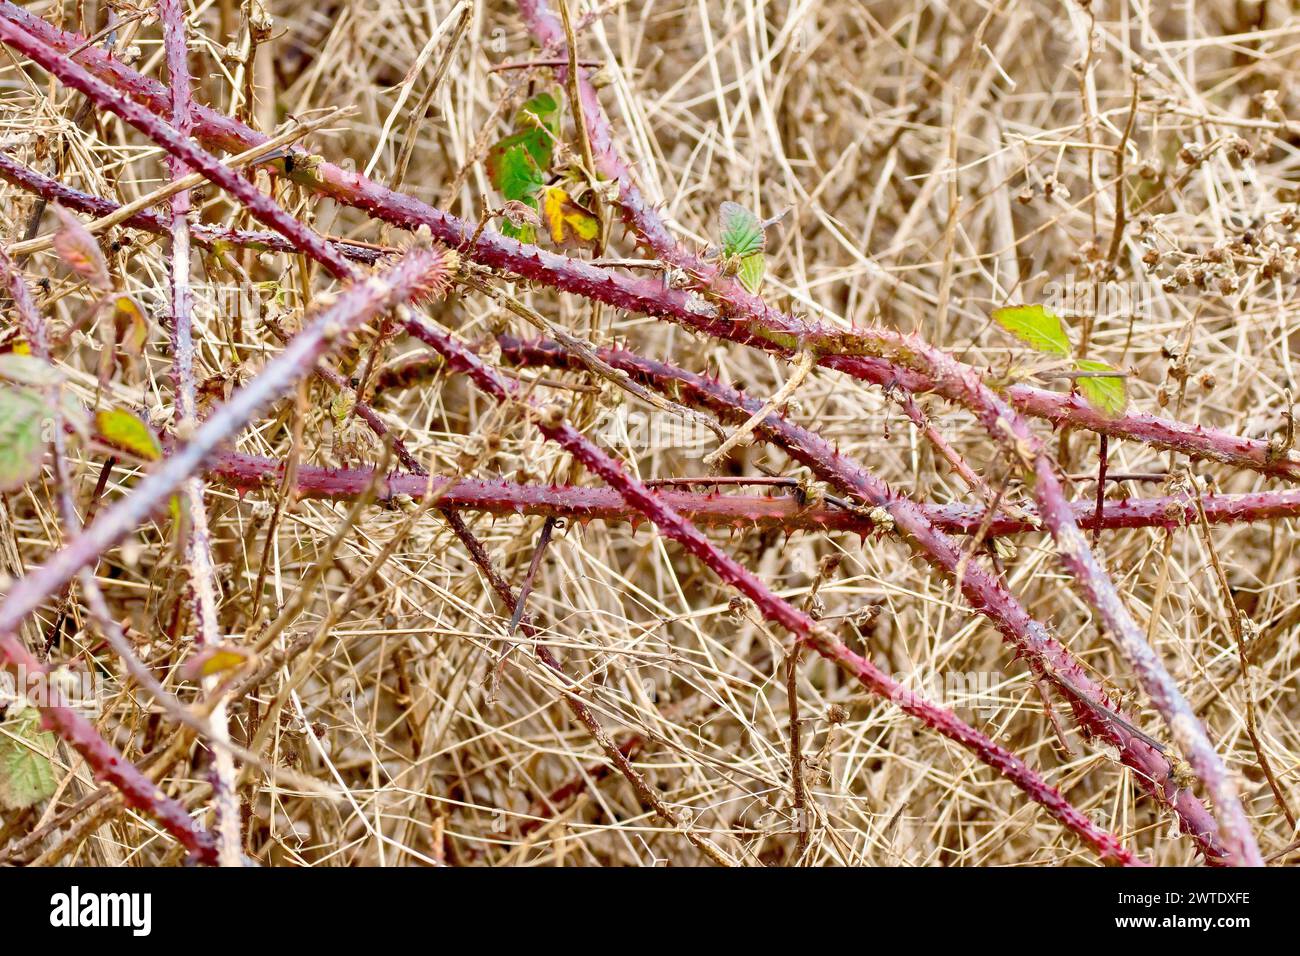 Brombeere oder Bramble (rubus fruticosus), Nahaufnahme mehrerer Sträucher oder Strauchläufer, die sich im Winter zwischen dem toten Unterholz verheddert haben. Stockfoto